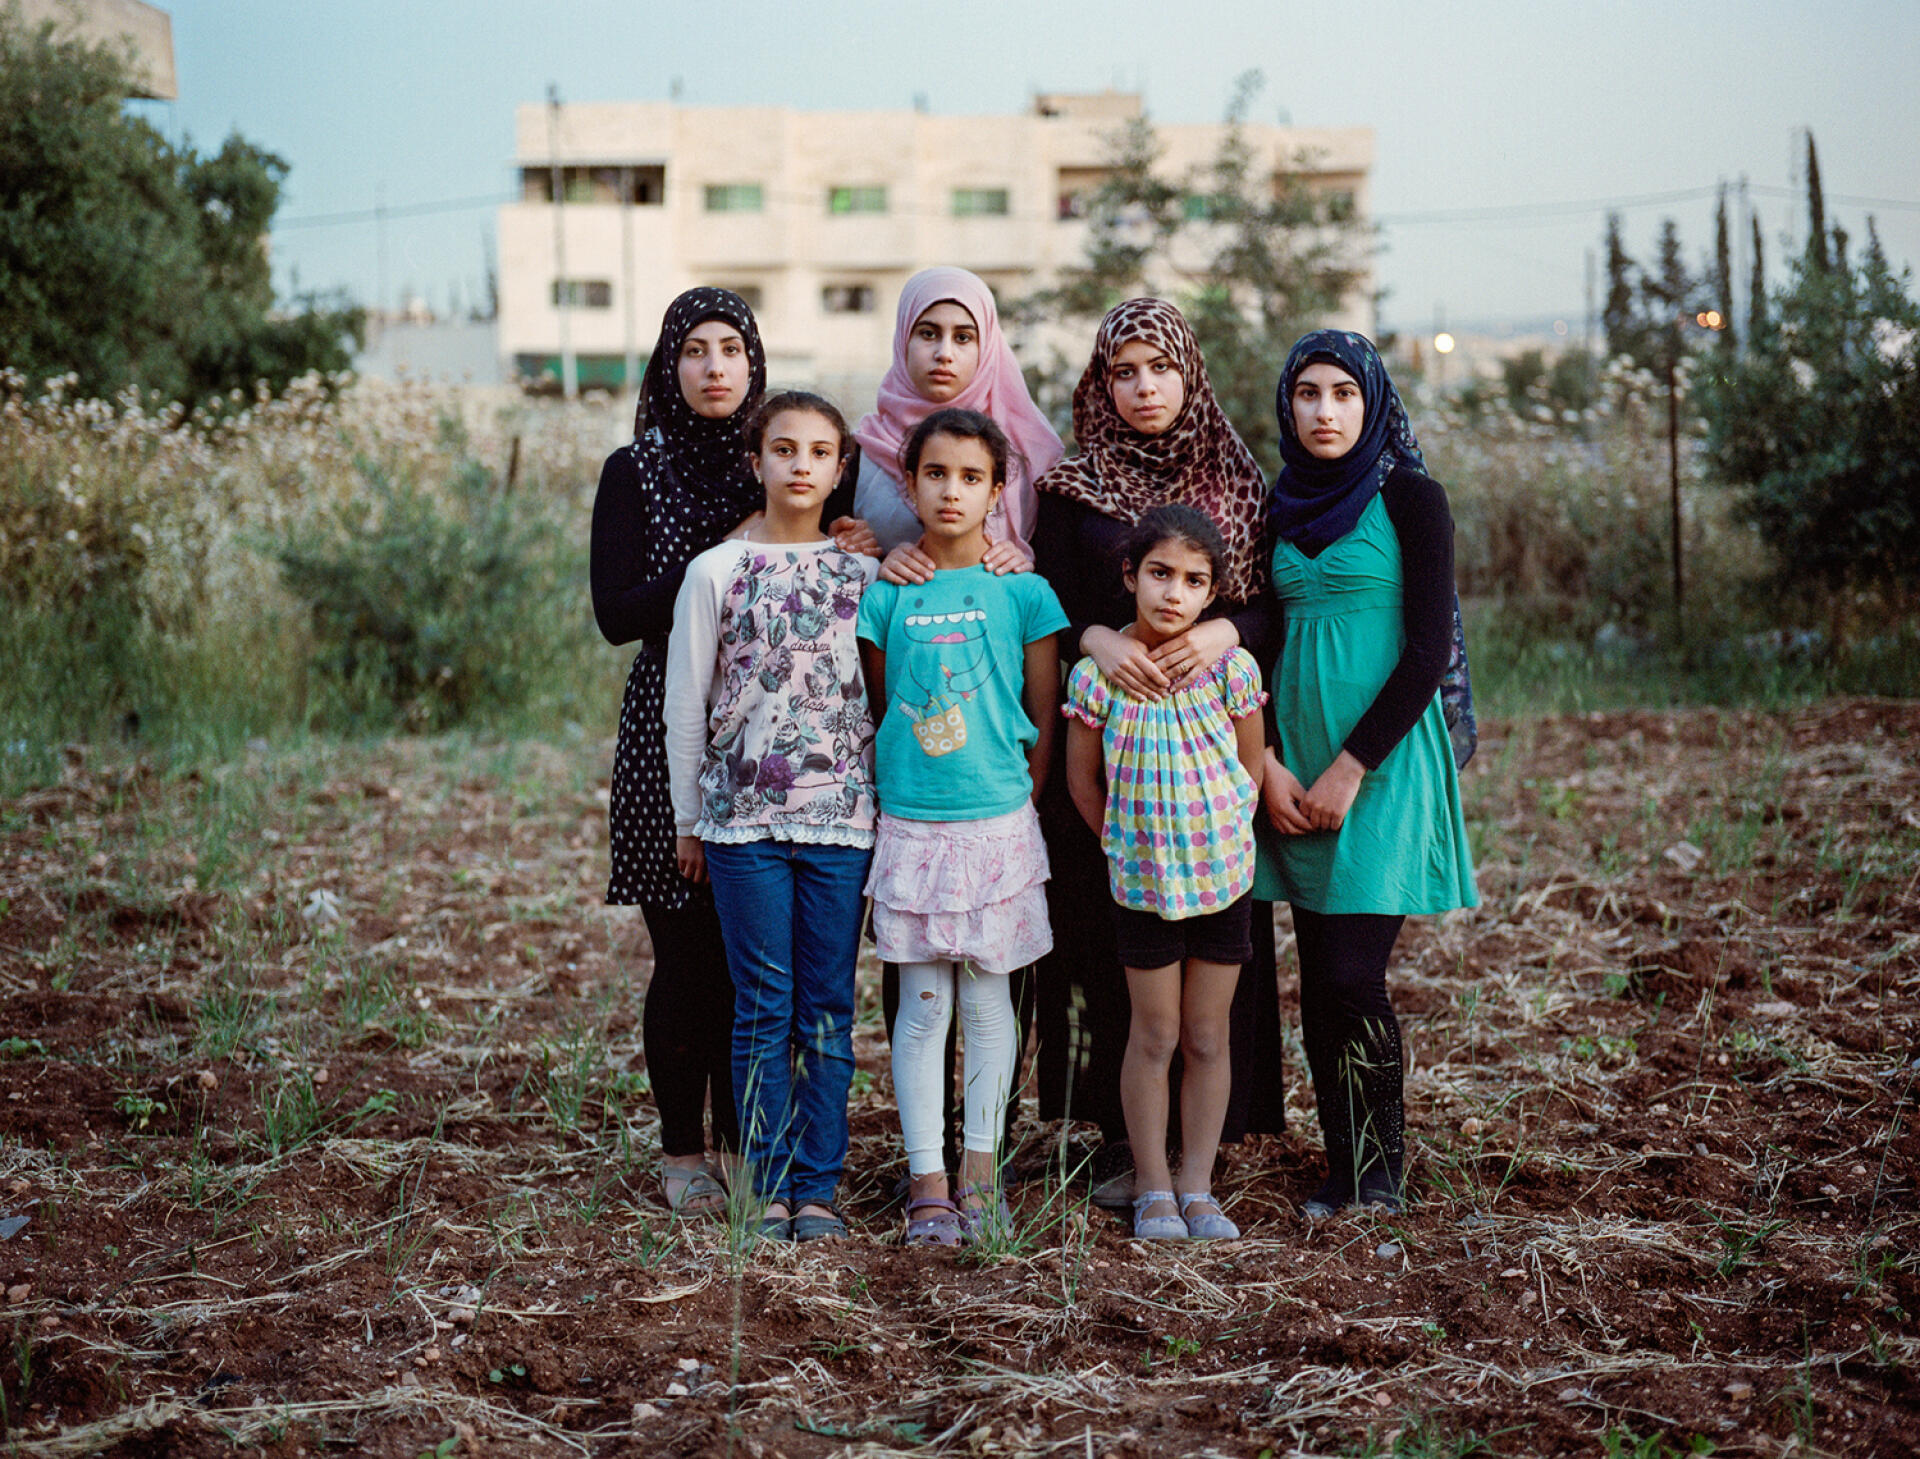 La famille Al-Zanghari a quitté la Jordanie pour s'installer en Norvège. Le père est arrivé seul en 2002 puis a fait venir son épouse  et ses filles entre 2004 et 2010. Ci-dessus, Doaa, Israe, Gofran,  Mona (de gauche à droite, rang du haut), Bayan, Sara et Nora  (rang du bas). Ces deux dernières, aujourd'hui âgées de 9 et 7 ans,  sont nées en Norvège. En 2013, la police a surgi chez eux en  pleine nuit pour les expulser. M. Al-Zanghari se serait fait passer  pour un Palestinien apatride afin d'obtenir l'asile politique.